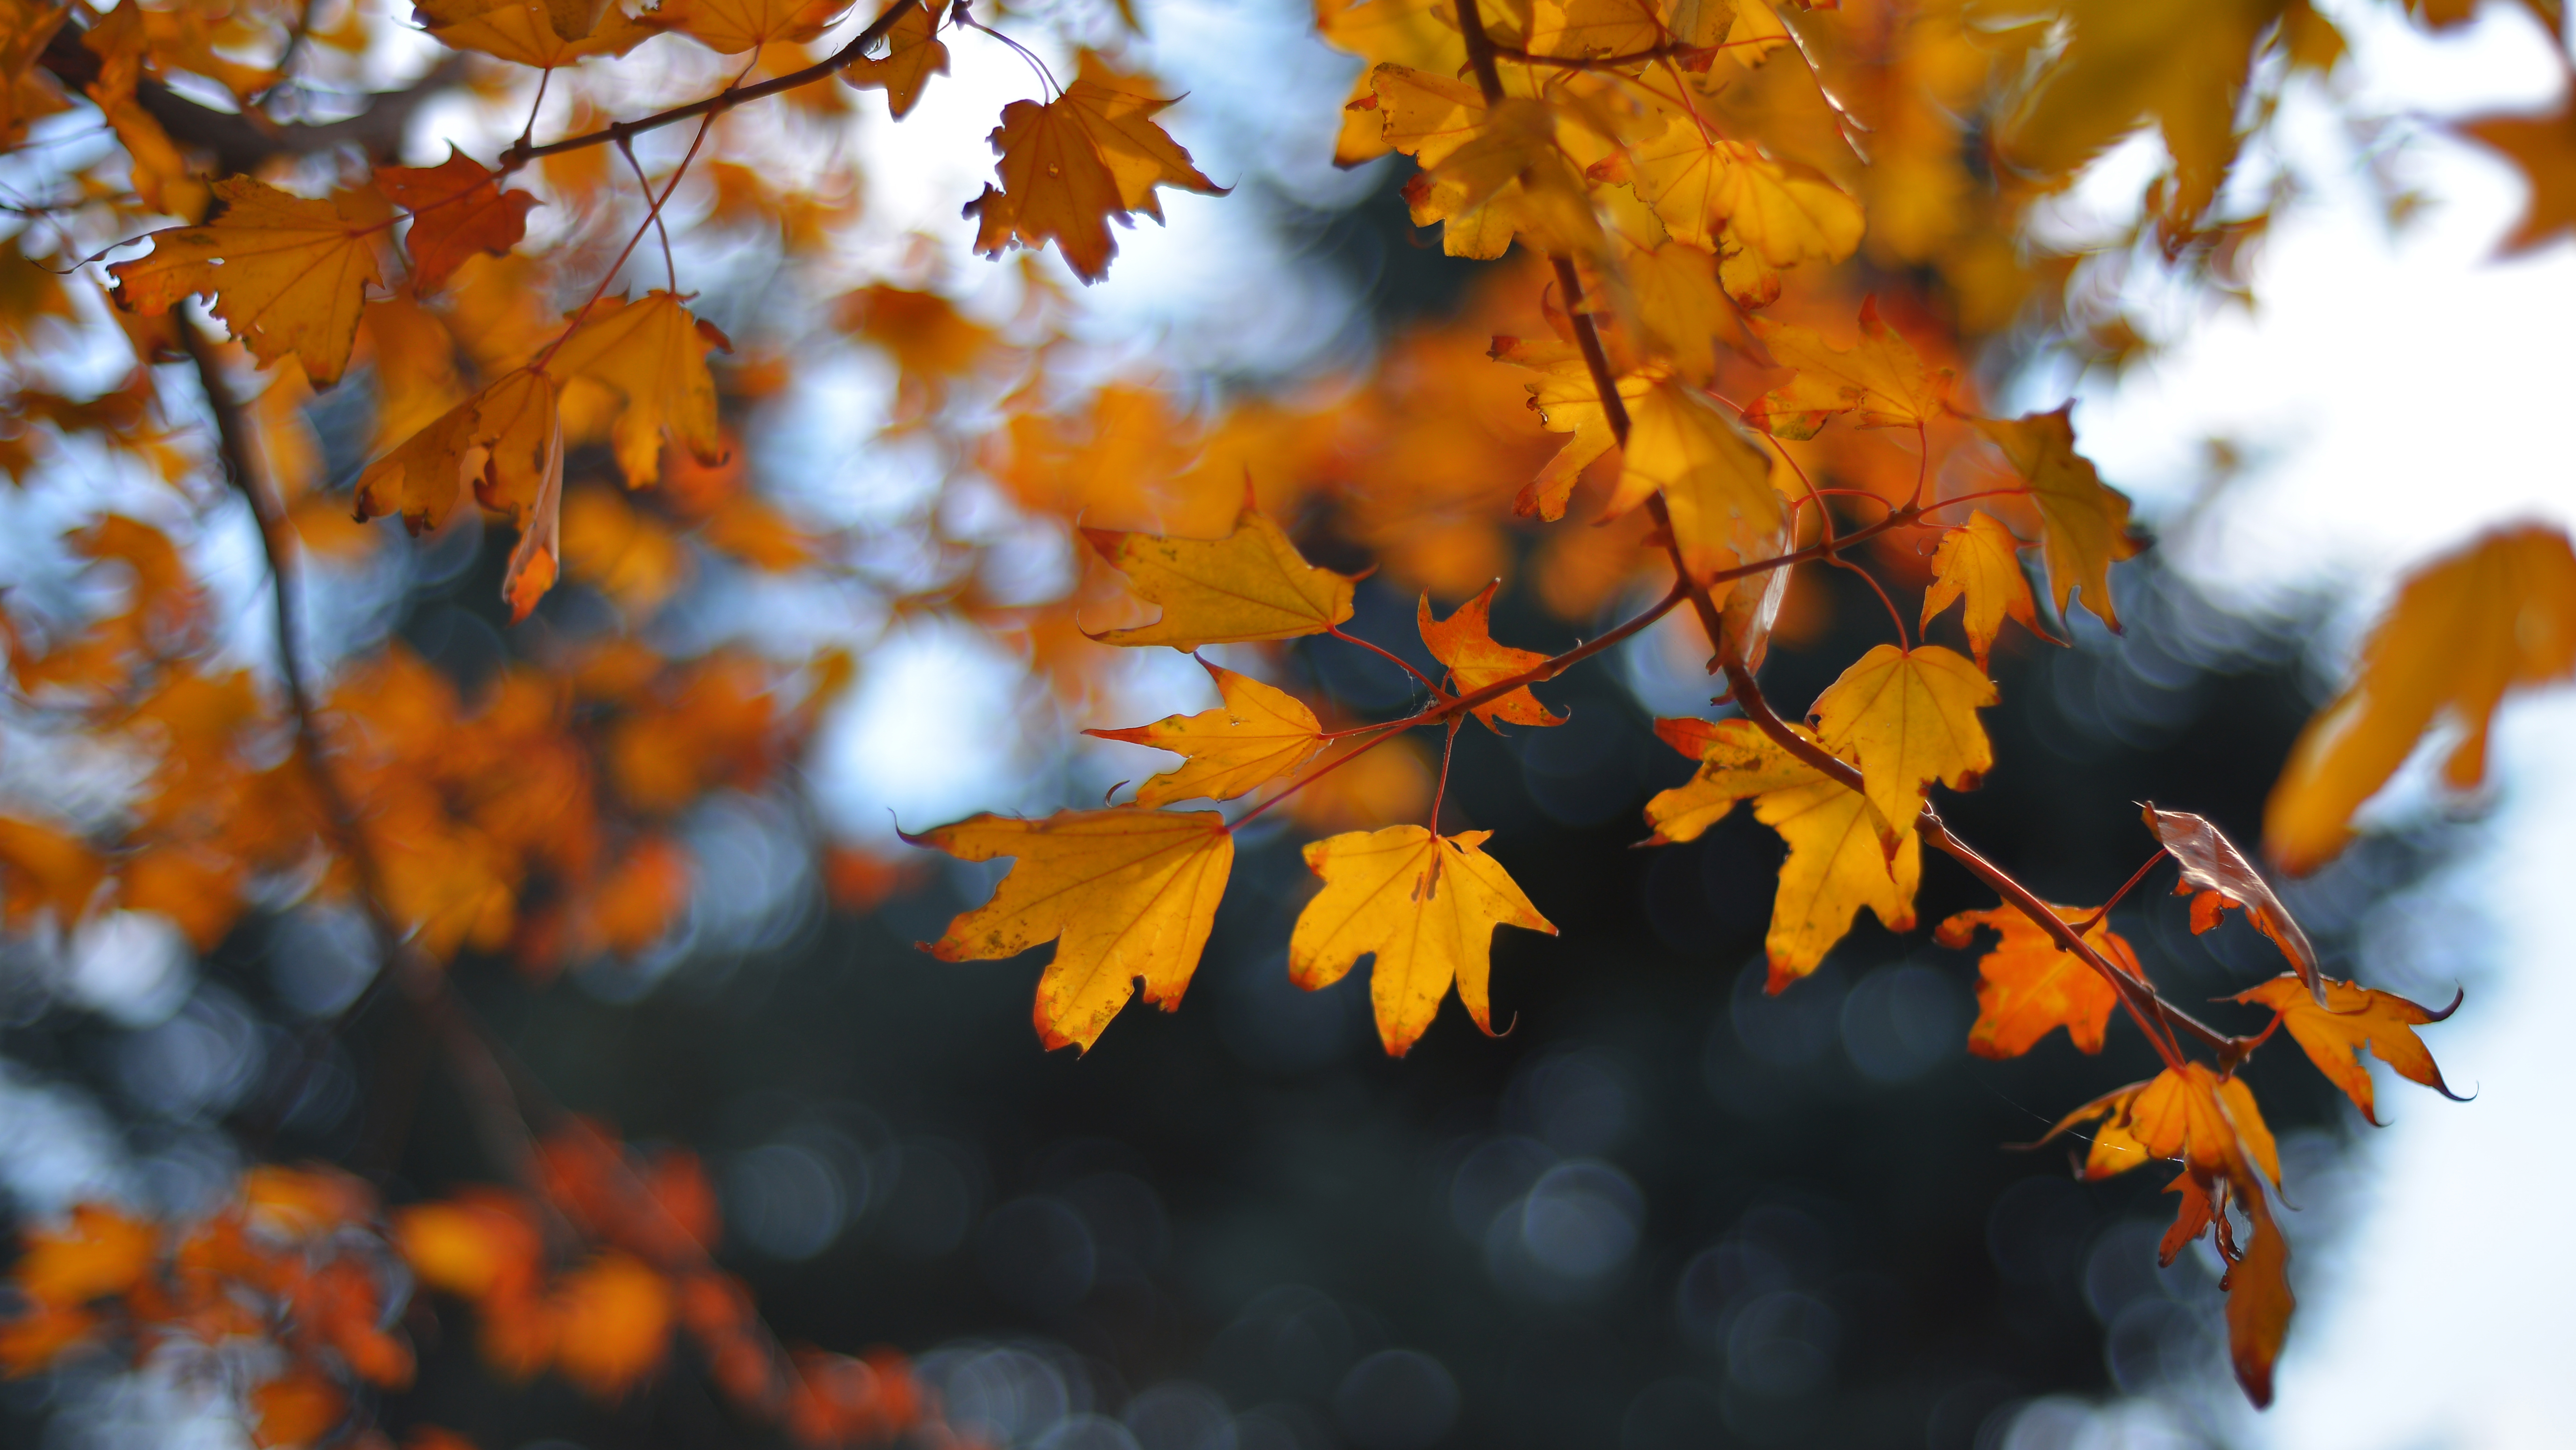 让这个秋天多点色彩秋叶摄影攻略大放送